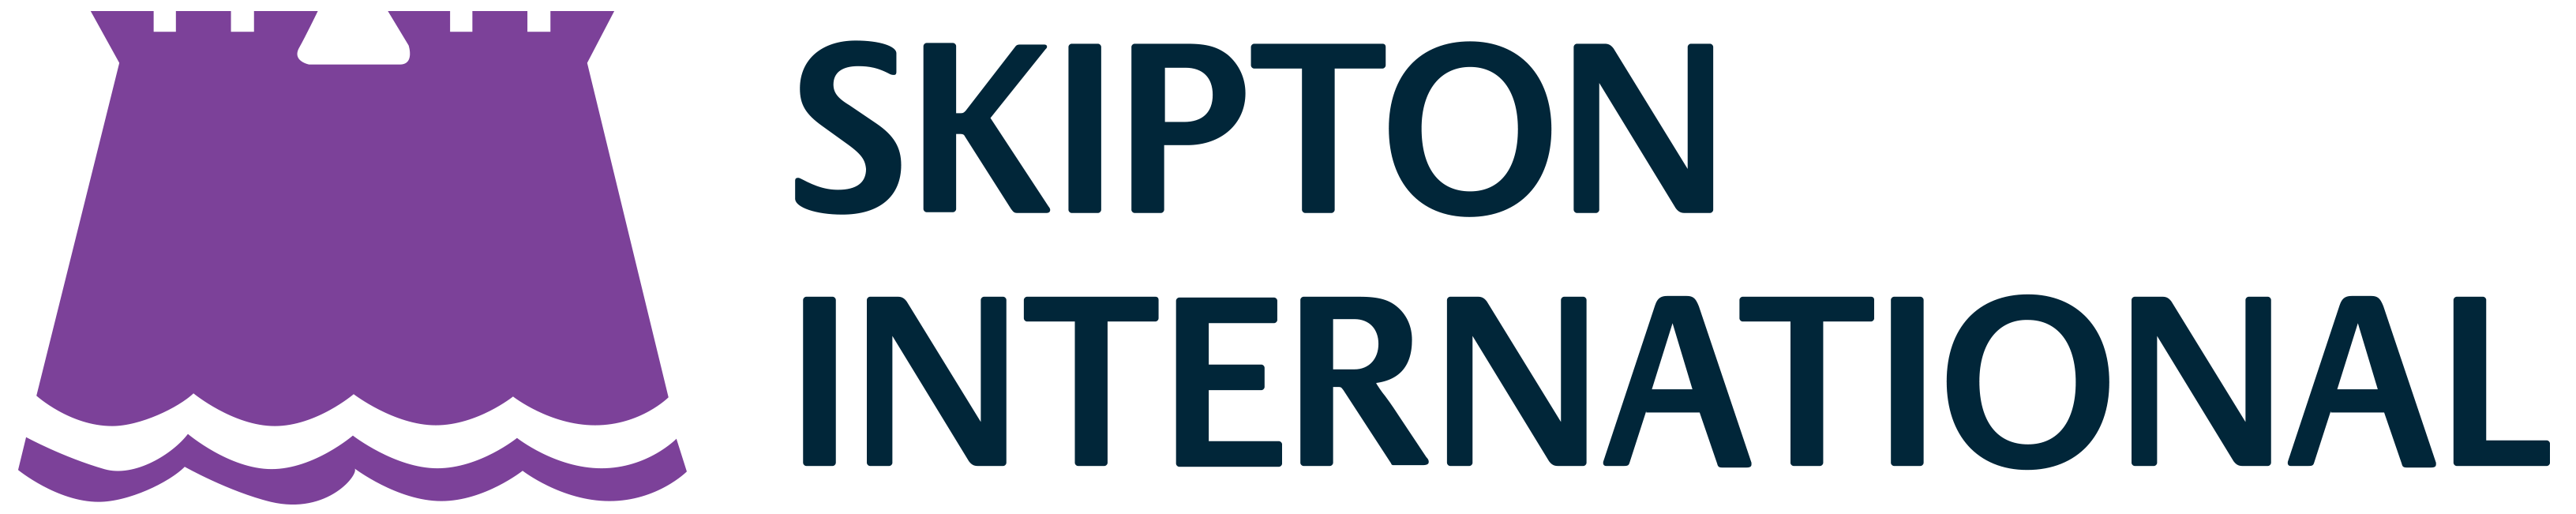 Skipton Logo